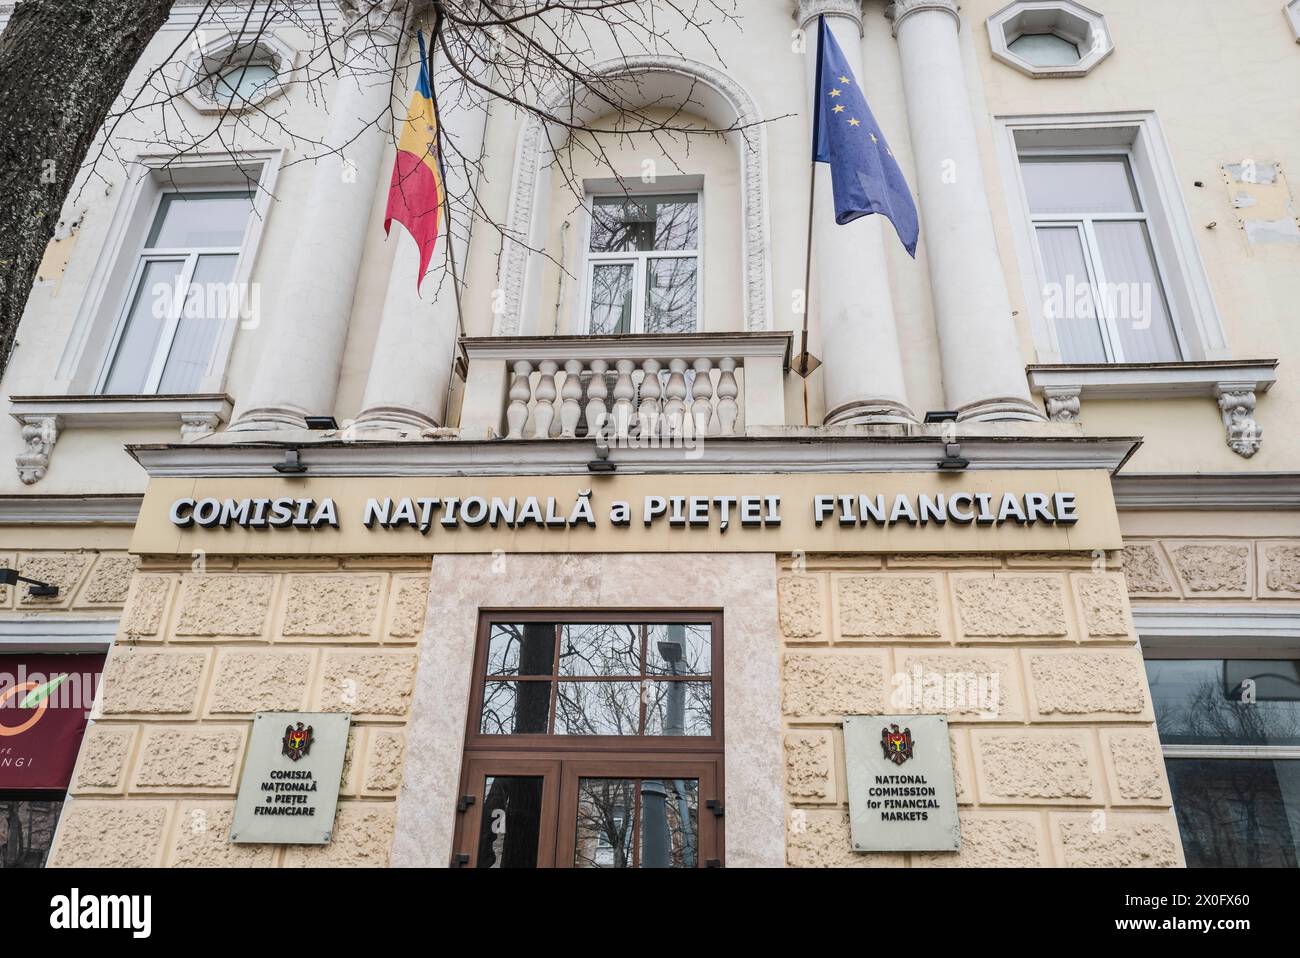 Bandiere moldave ed europee sulle facciate degli edifici ufficiali della capitale. Patricia Huchot-Boissier / Collectif DyF Foto Stock